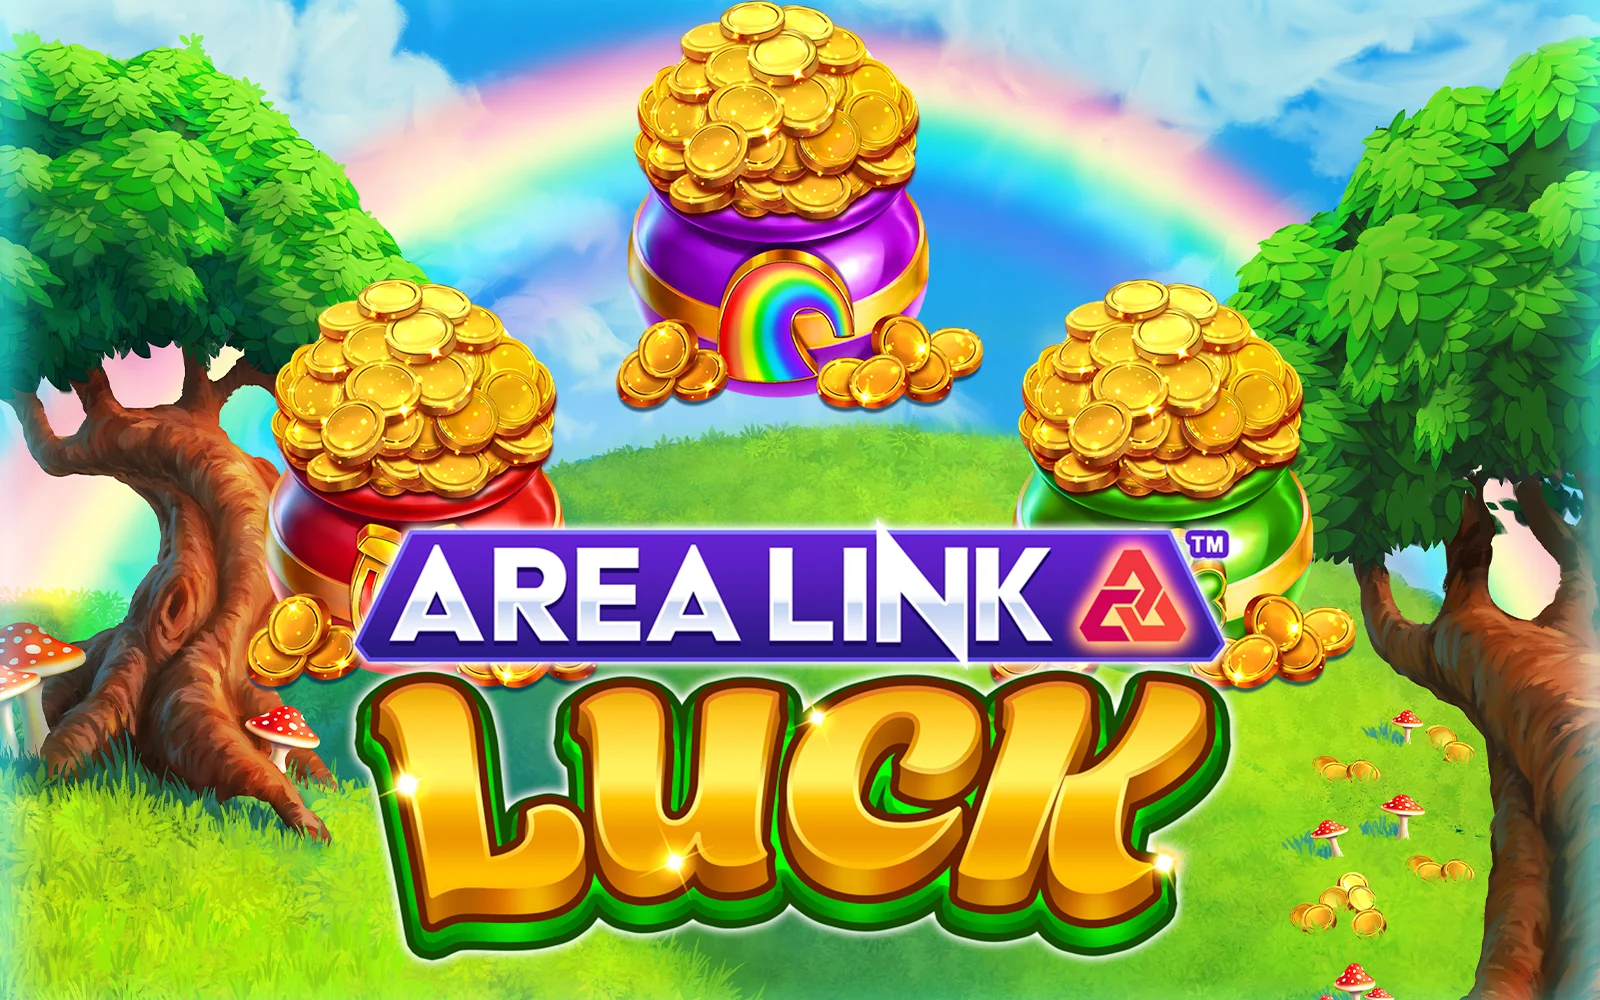 Juega a Area Link™ Luck en el casino en línea de Starcasino.be